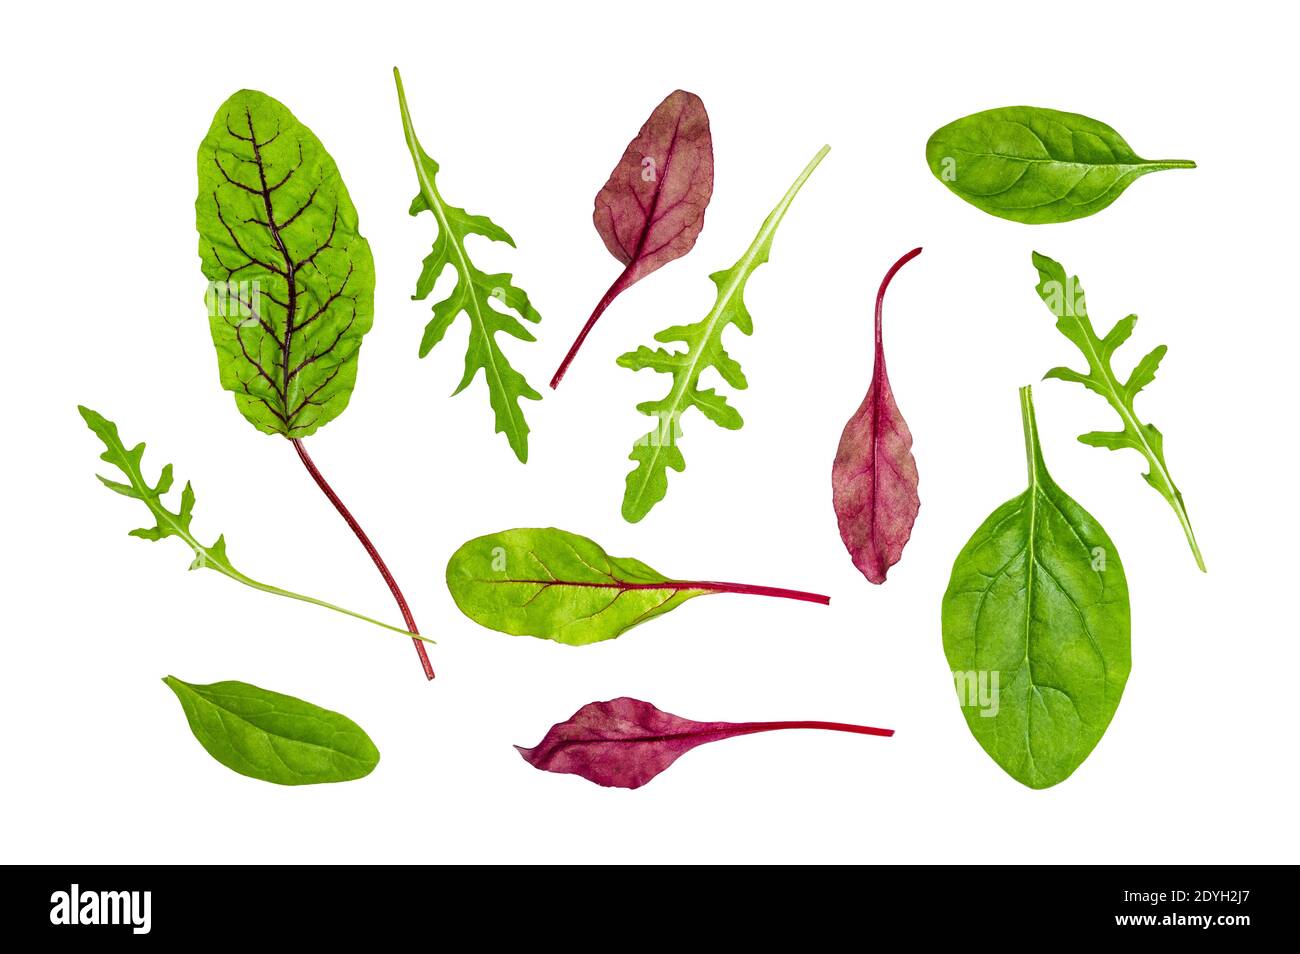 diverses feuilles de légumes feuillus coupées sur fond blanc Banque D'Images